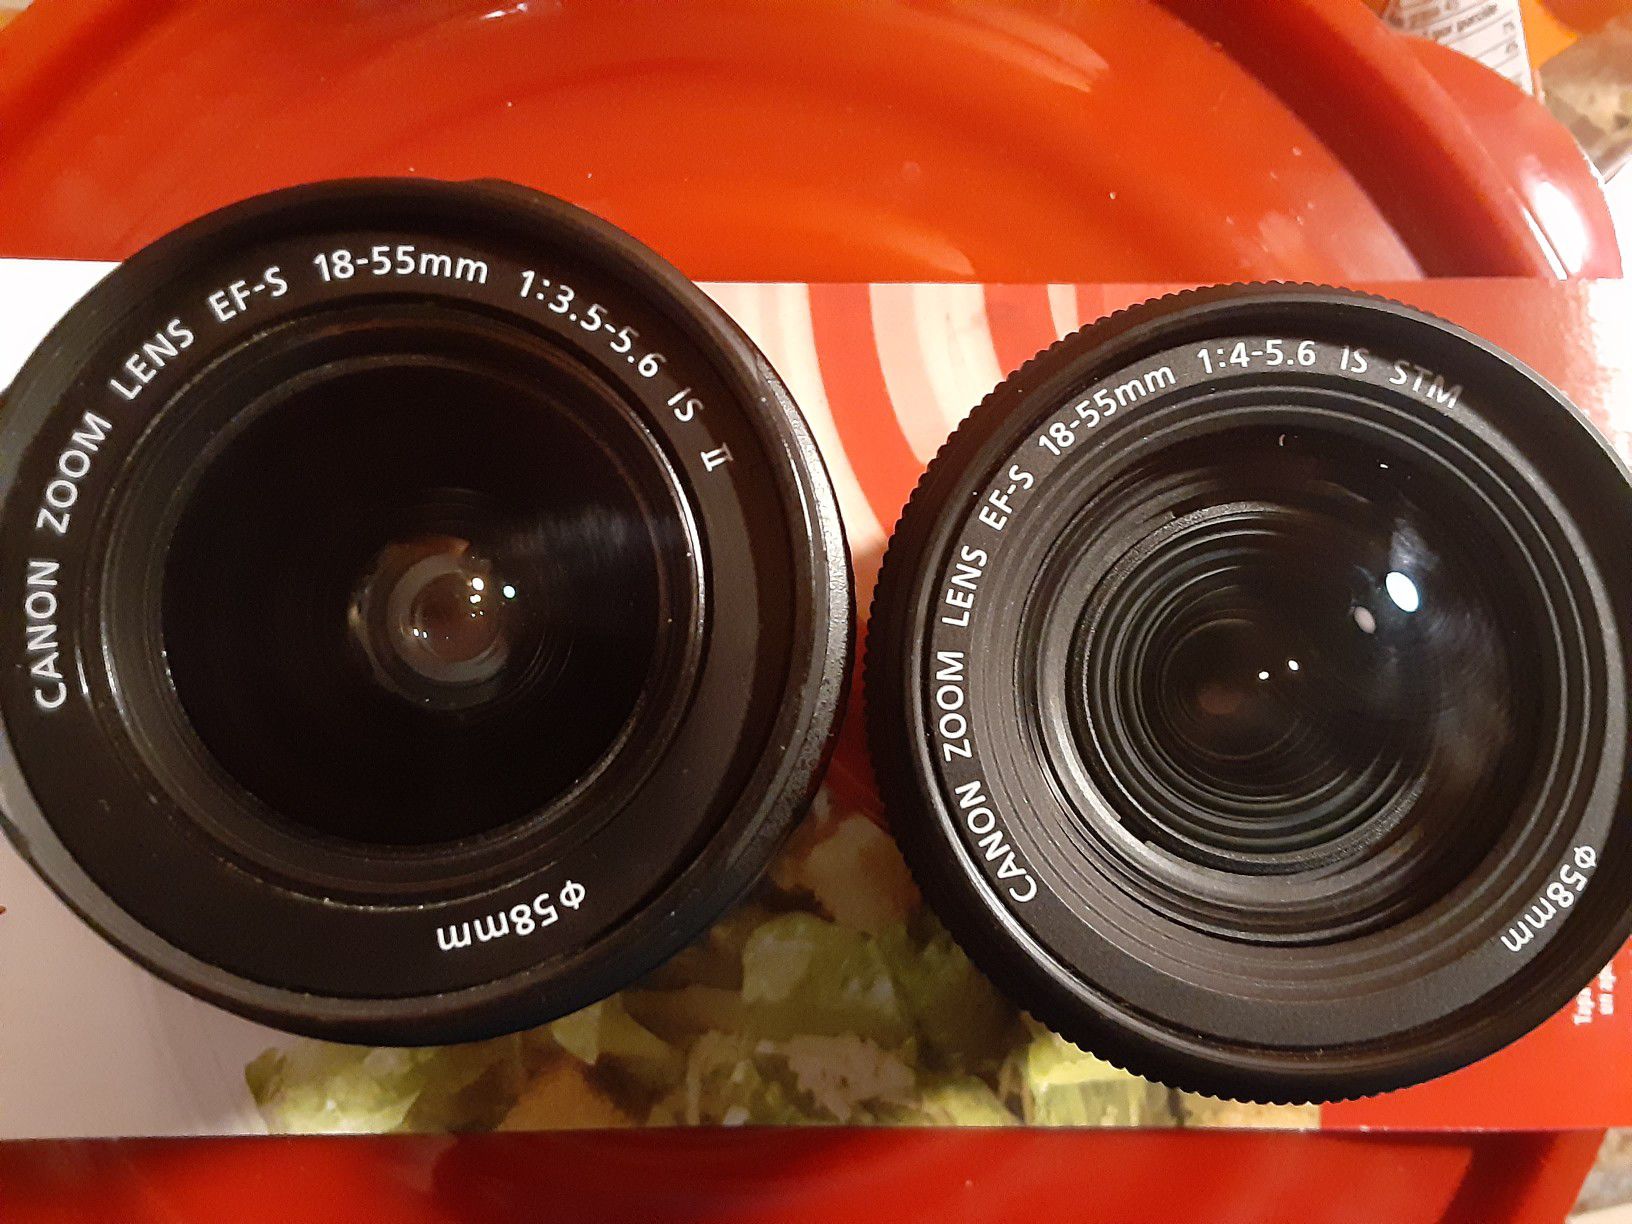 Canon lenses